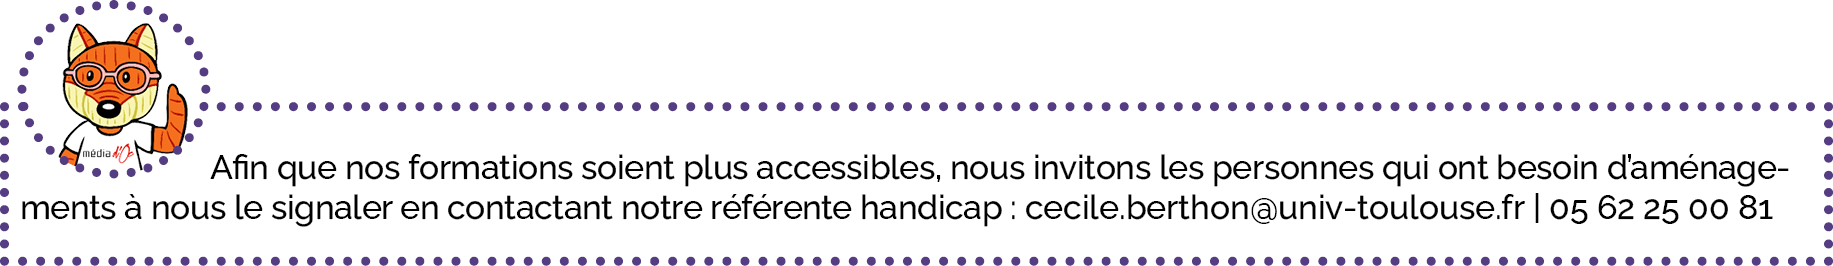 Afin que nos formations soient plus accessibles, nous invitons les personnes qui ont besoin d’aménagements à nous le signaler en contactant notre référente handicap : cecile.berthon@univ-toulouse.fr | 05 62 25 00 81